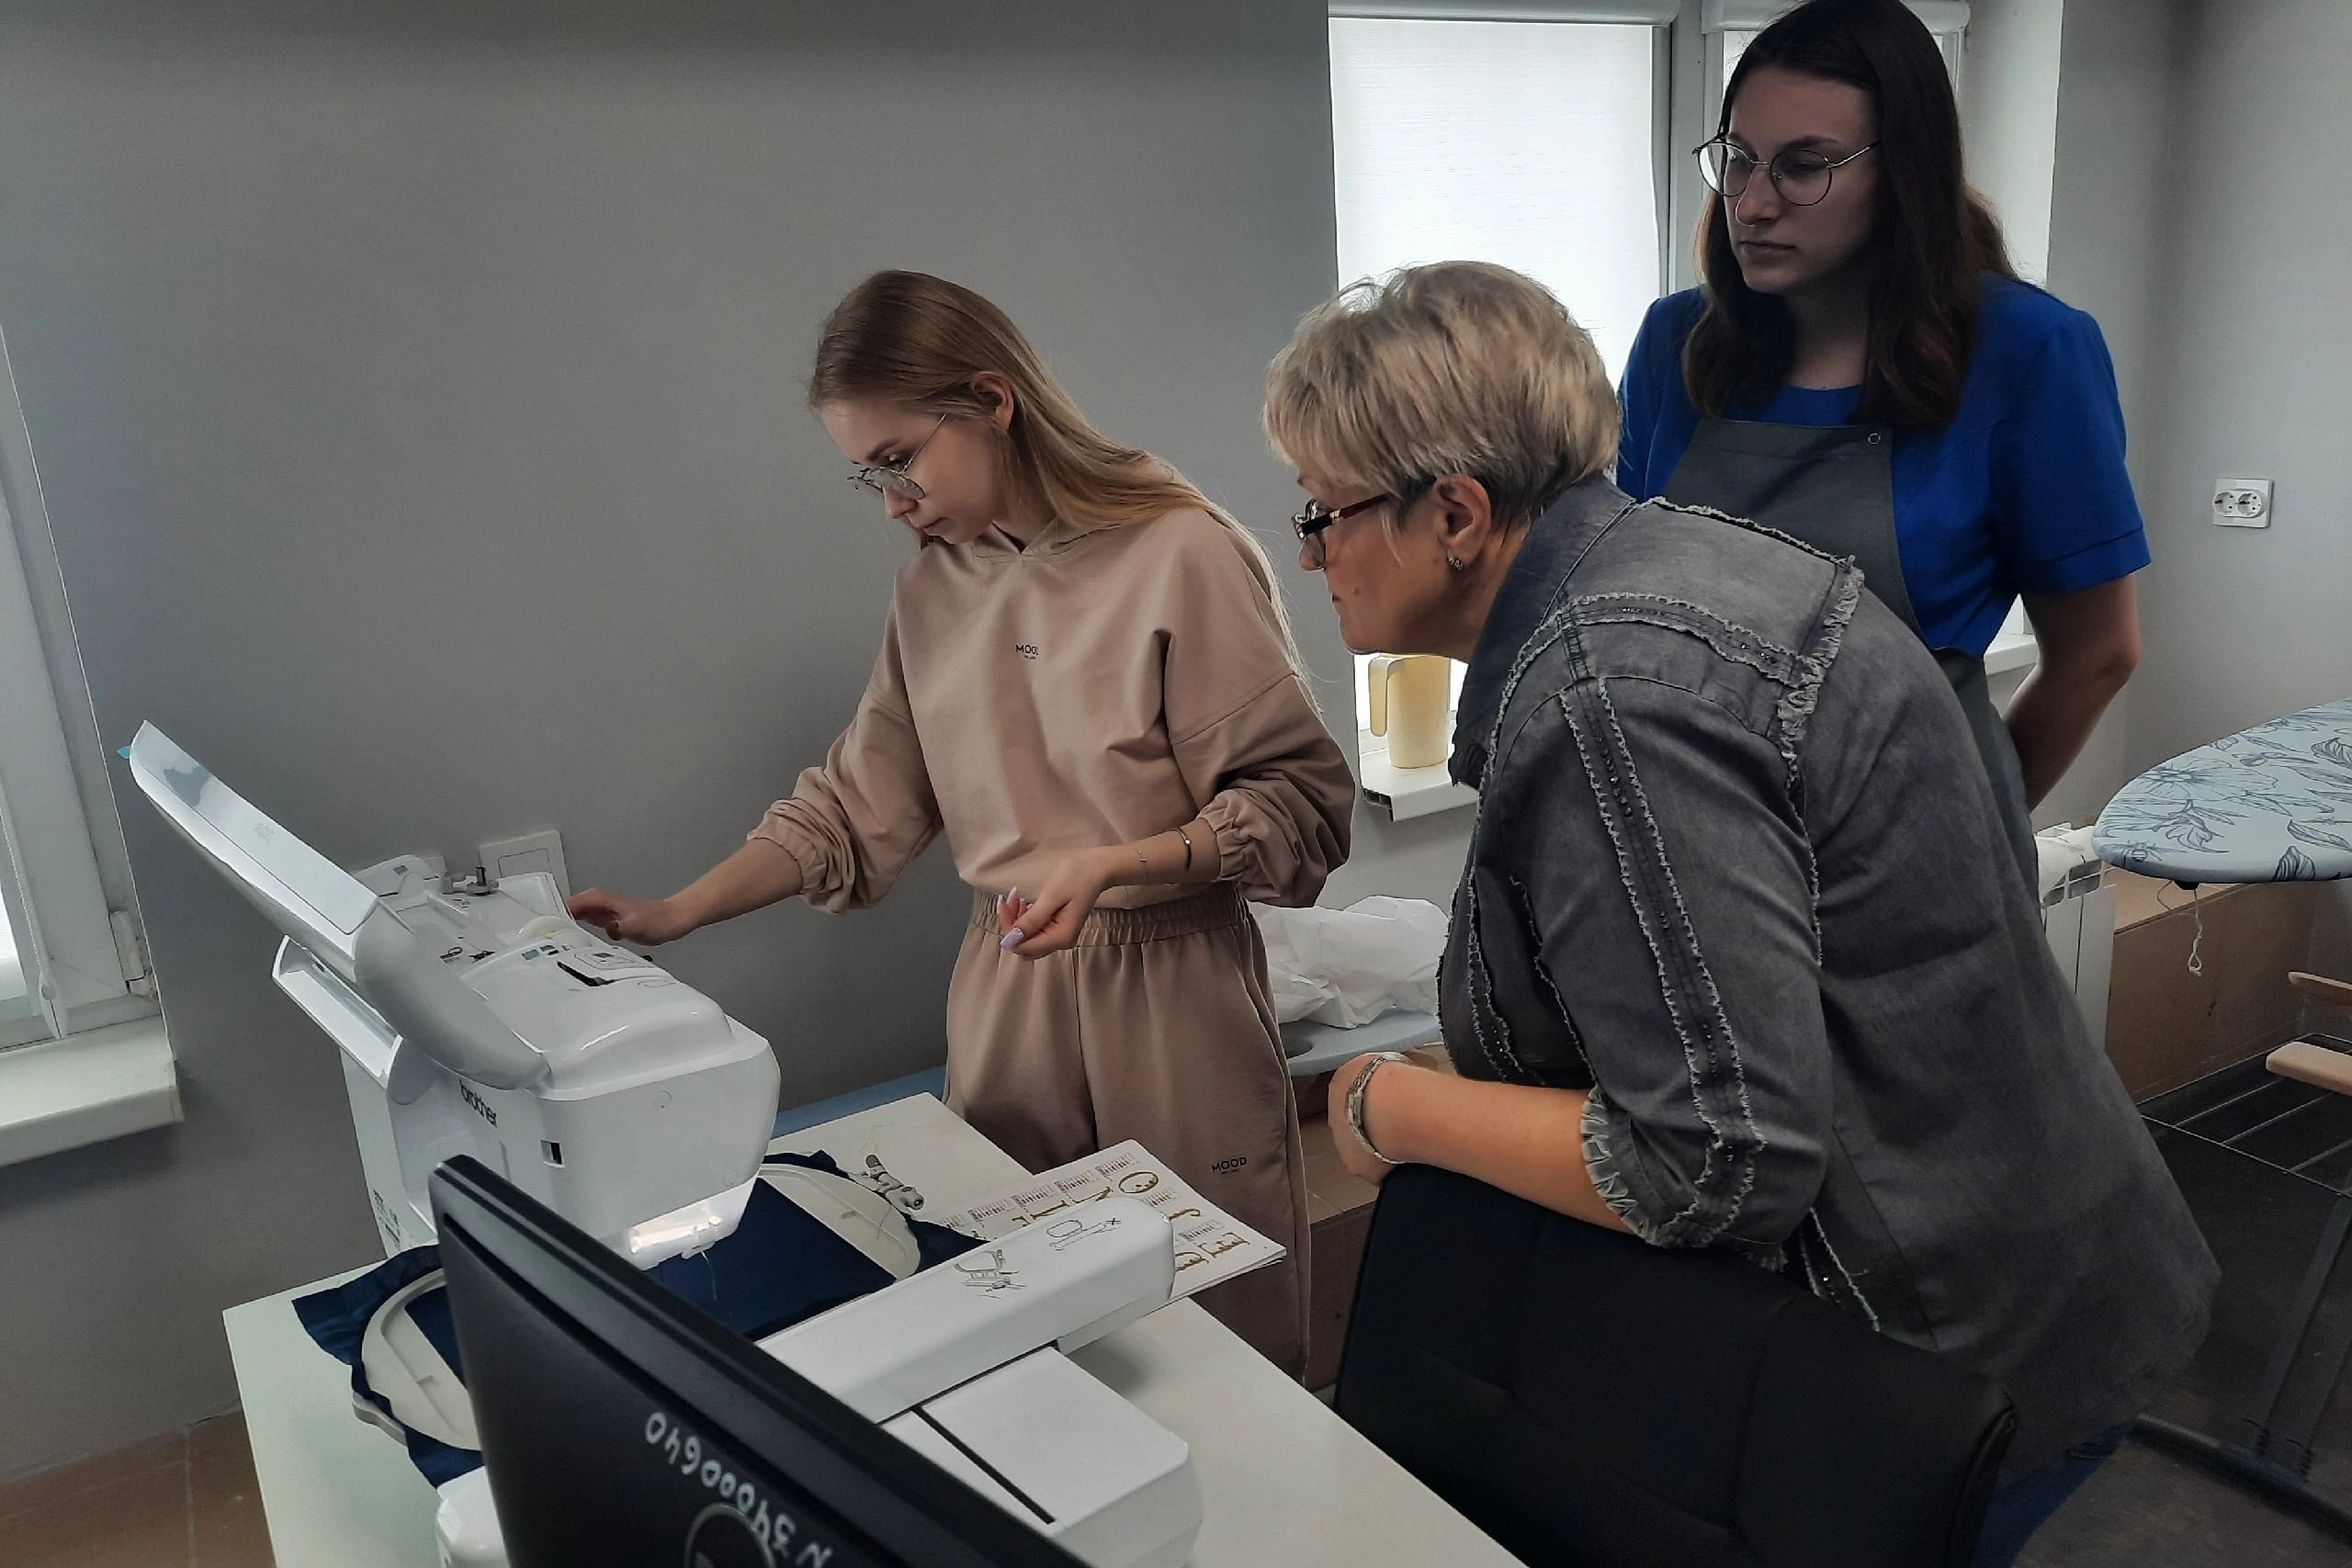 Мастер-класс по вышивке прошёл в Технопарке Мининского университета